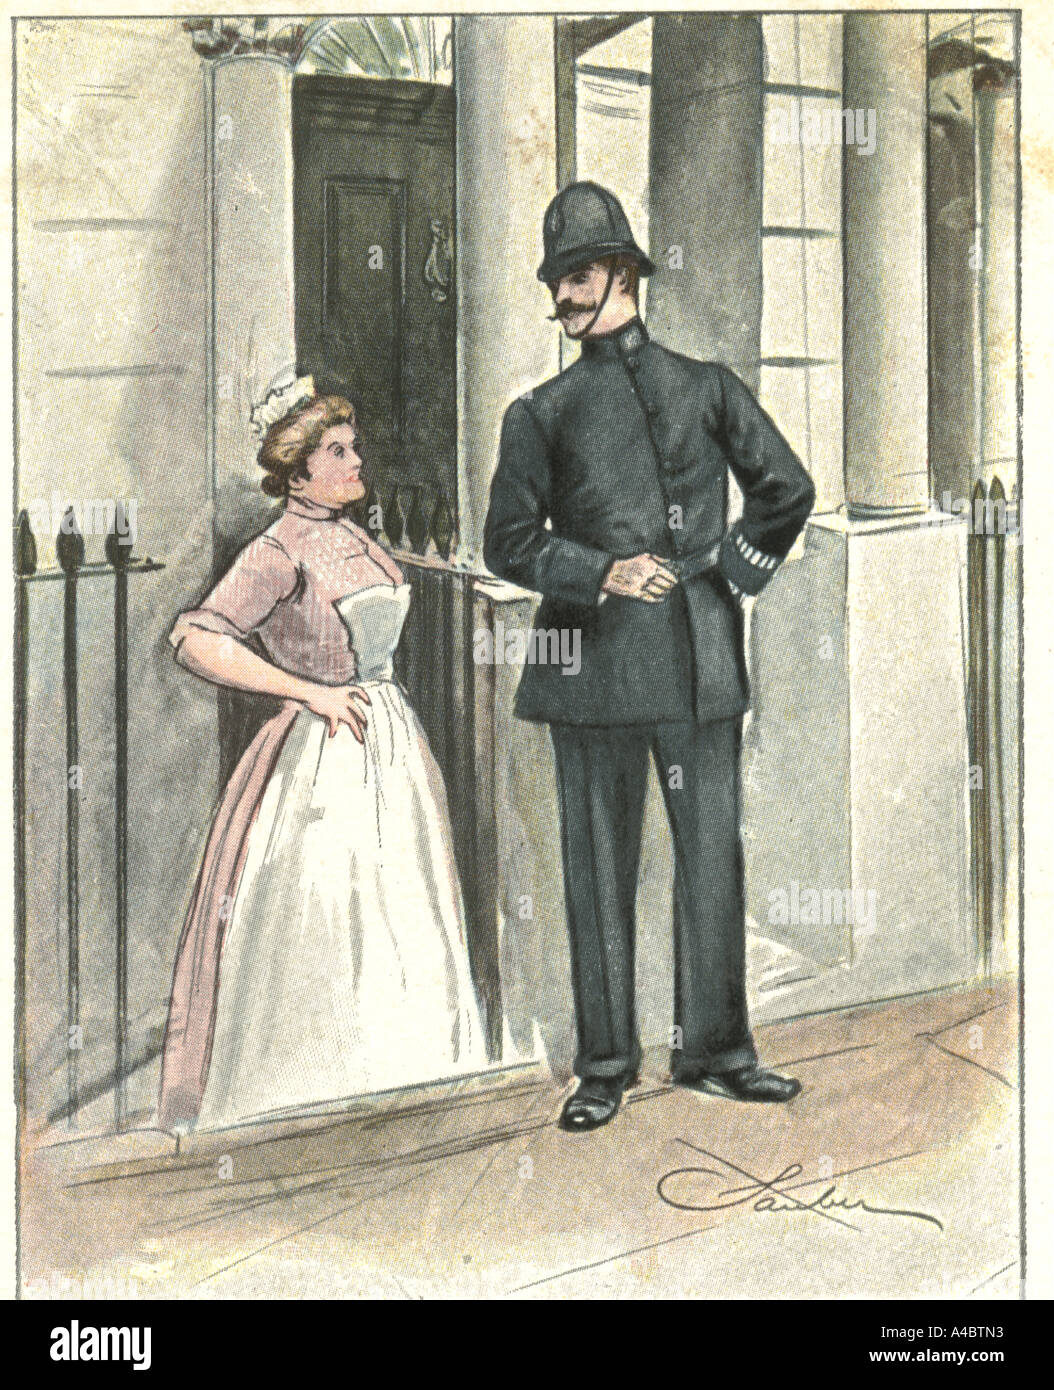 Housemaid and policeman circa 1910 Stock Photo